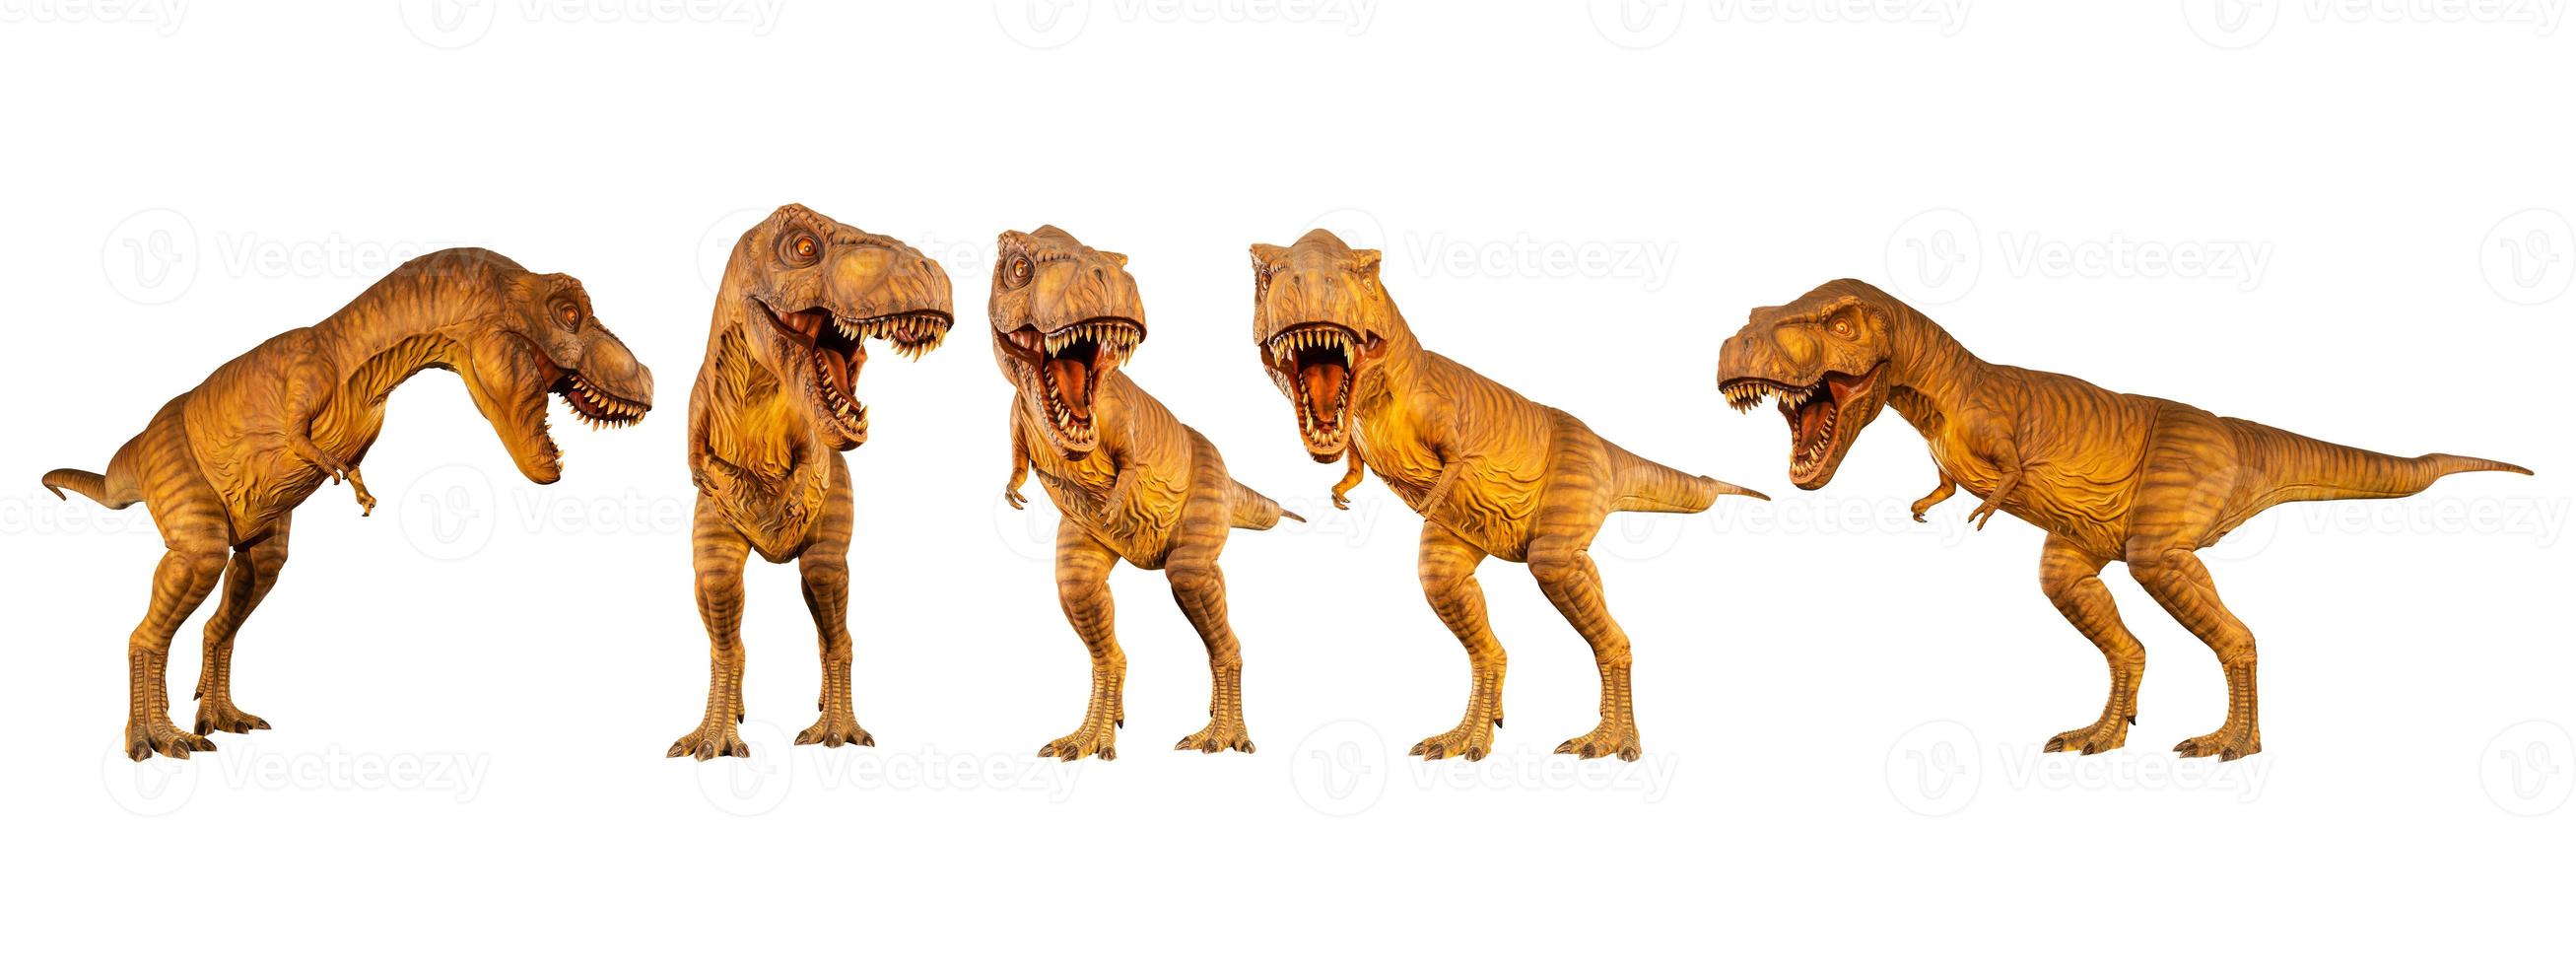 uppsättning olika dinosaurieställningar på vit isolerad bakgrund foto